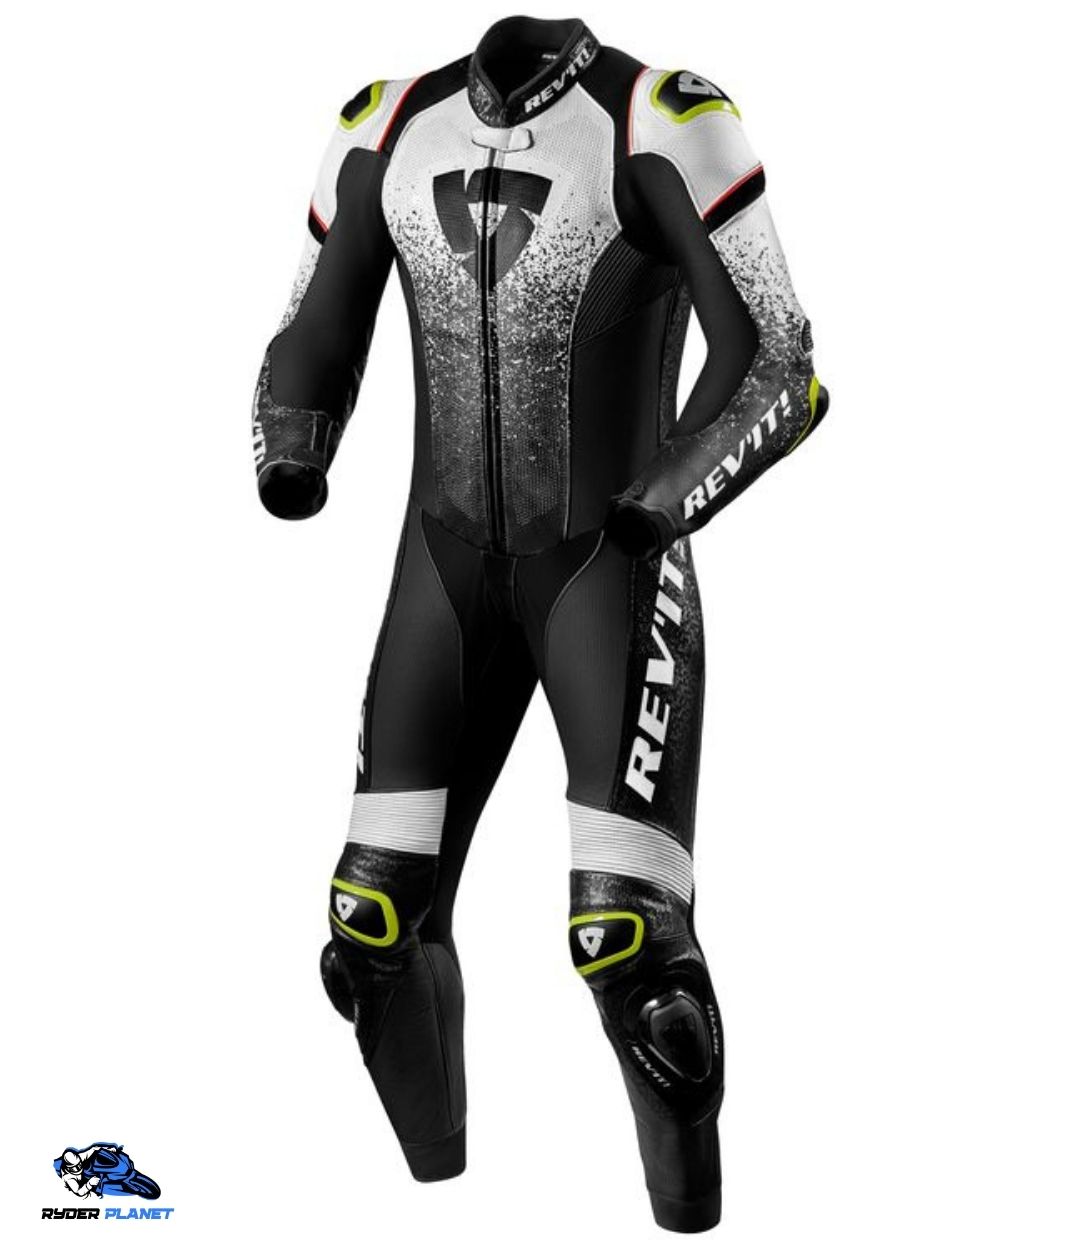 road racing leathers - REV'IT! Quantum Race Suit